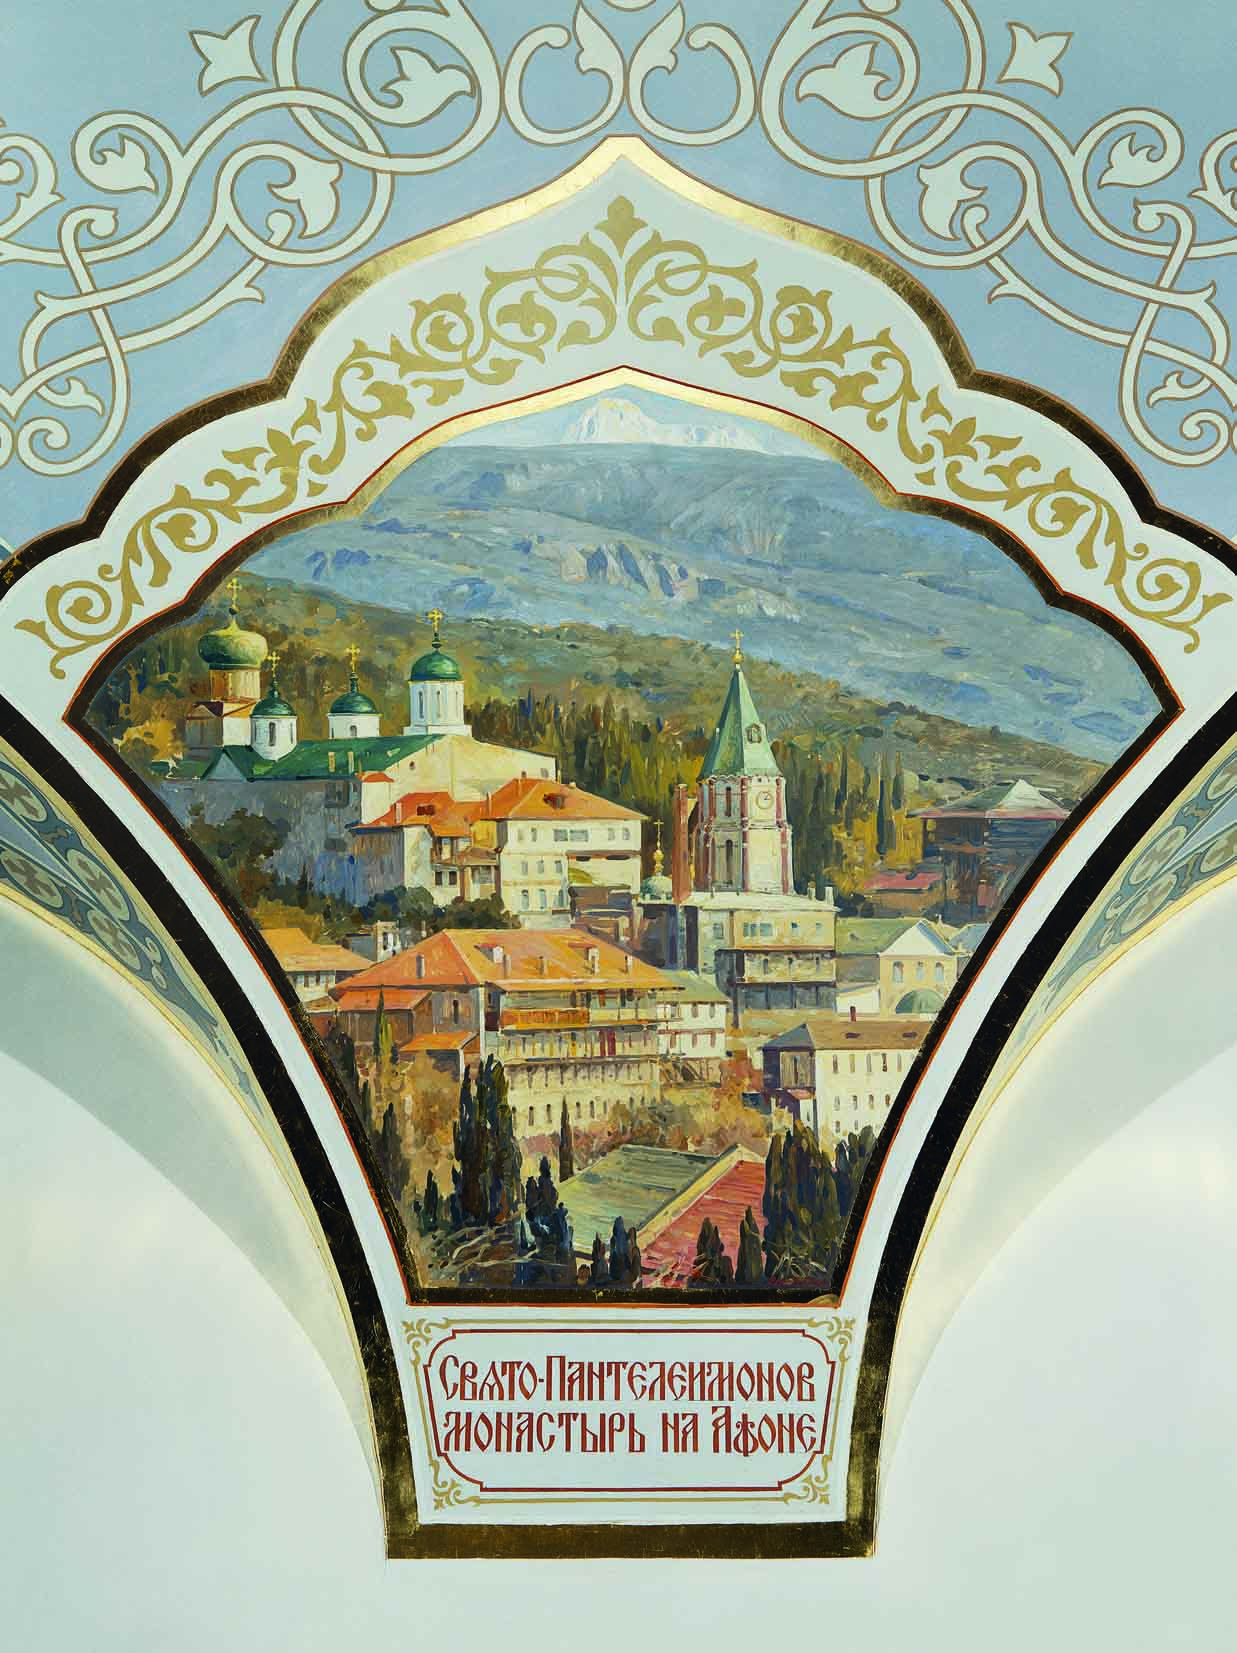 St. Panteleimon Monastery at Mount Athos